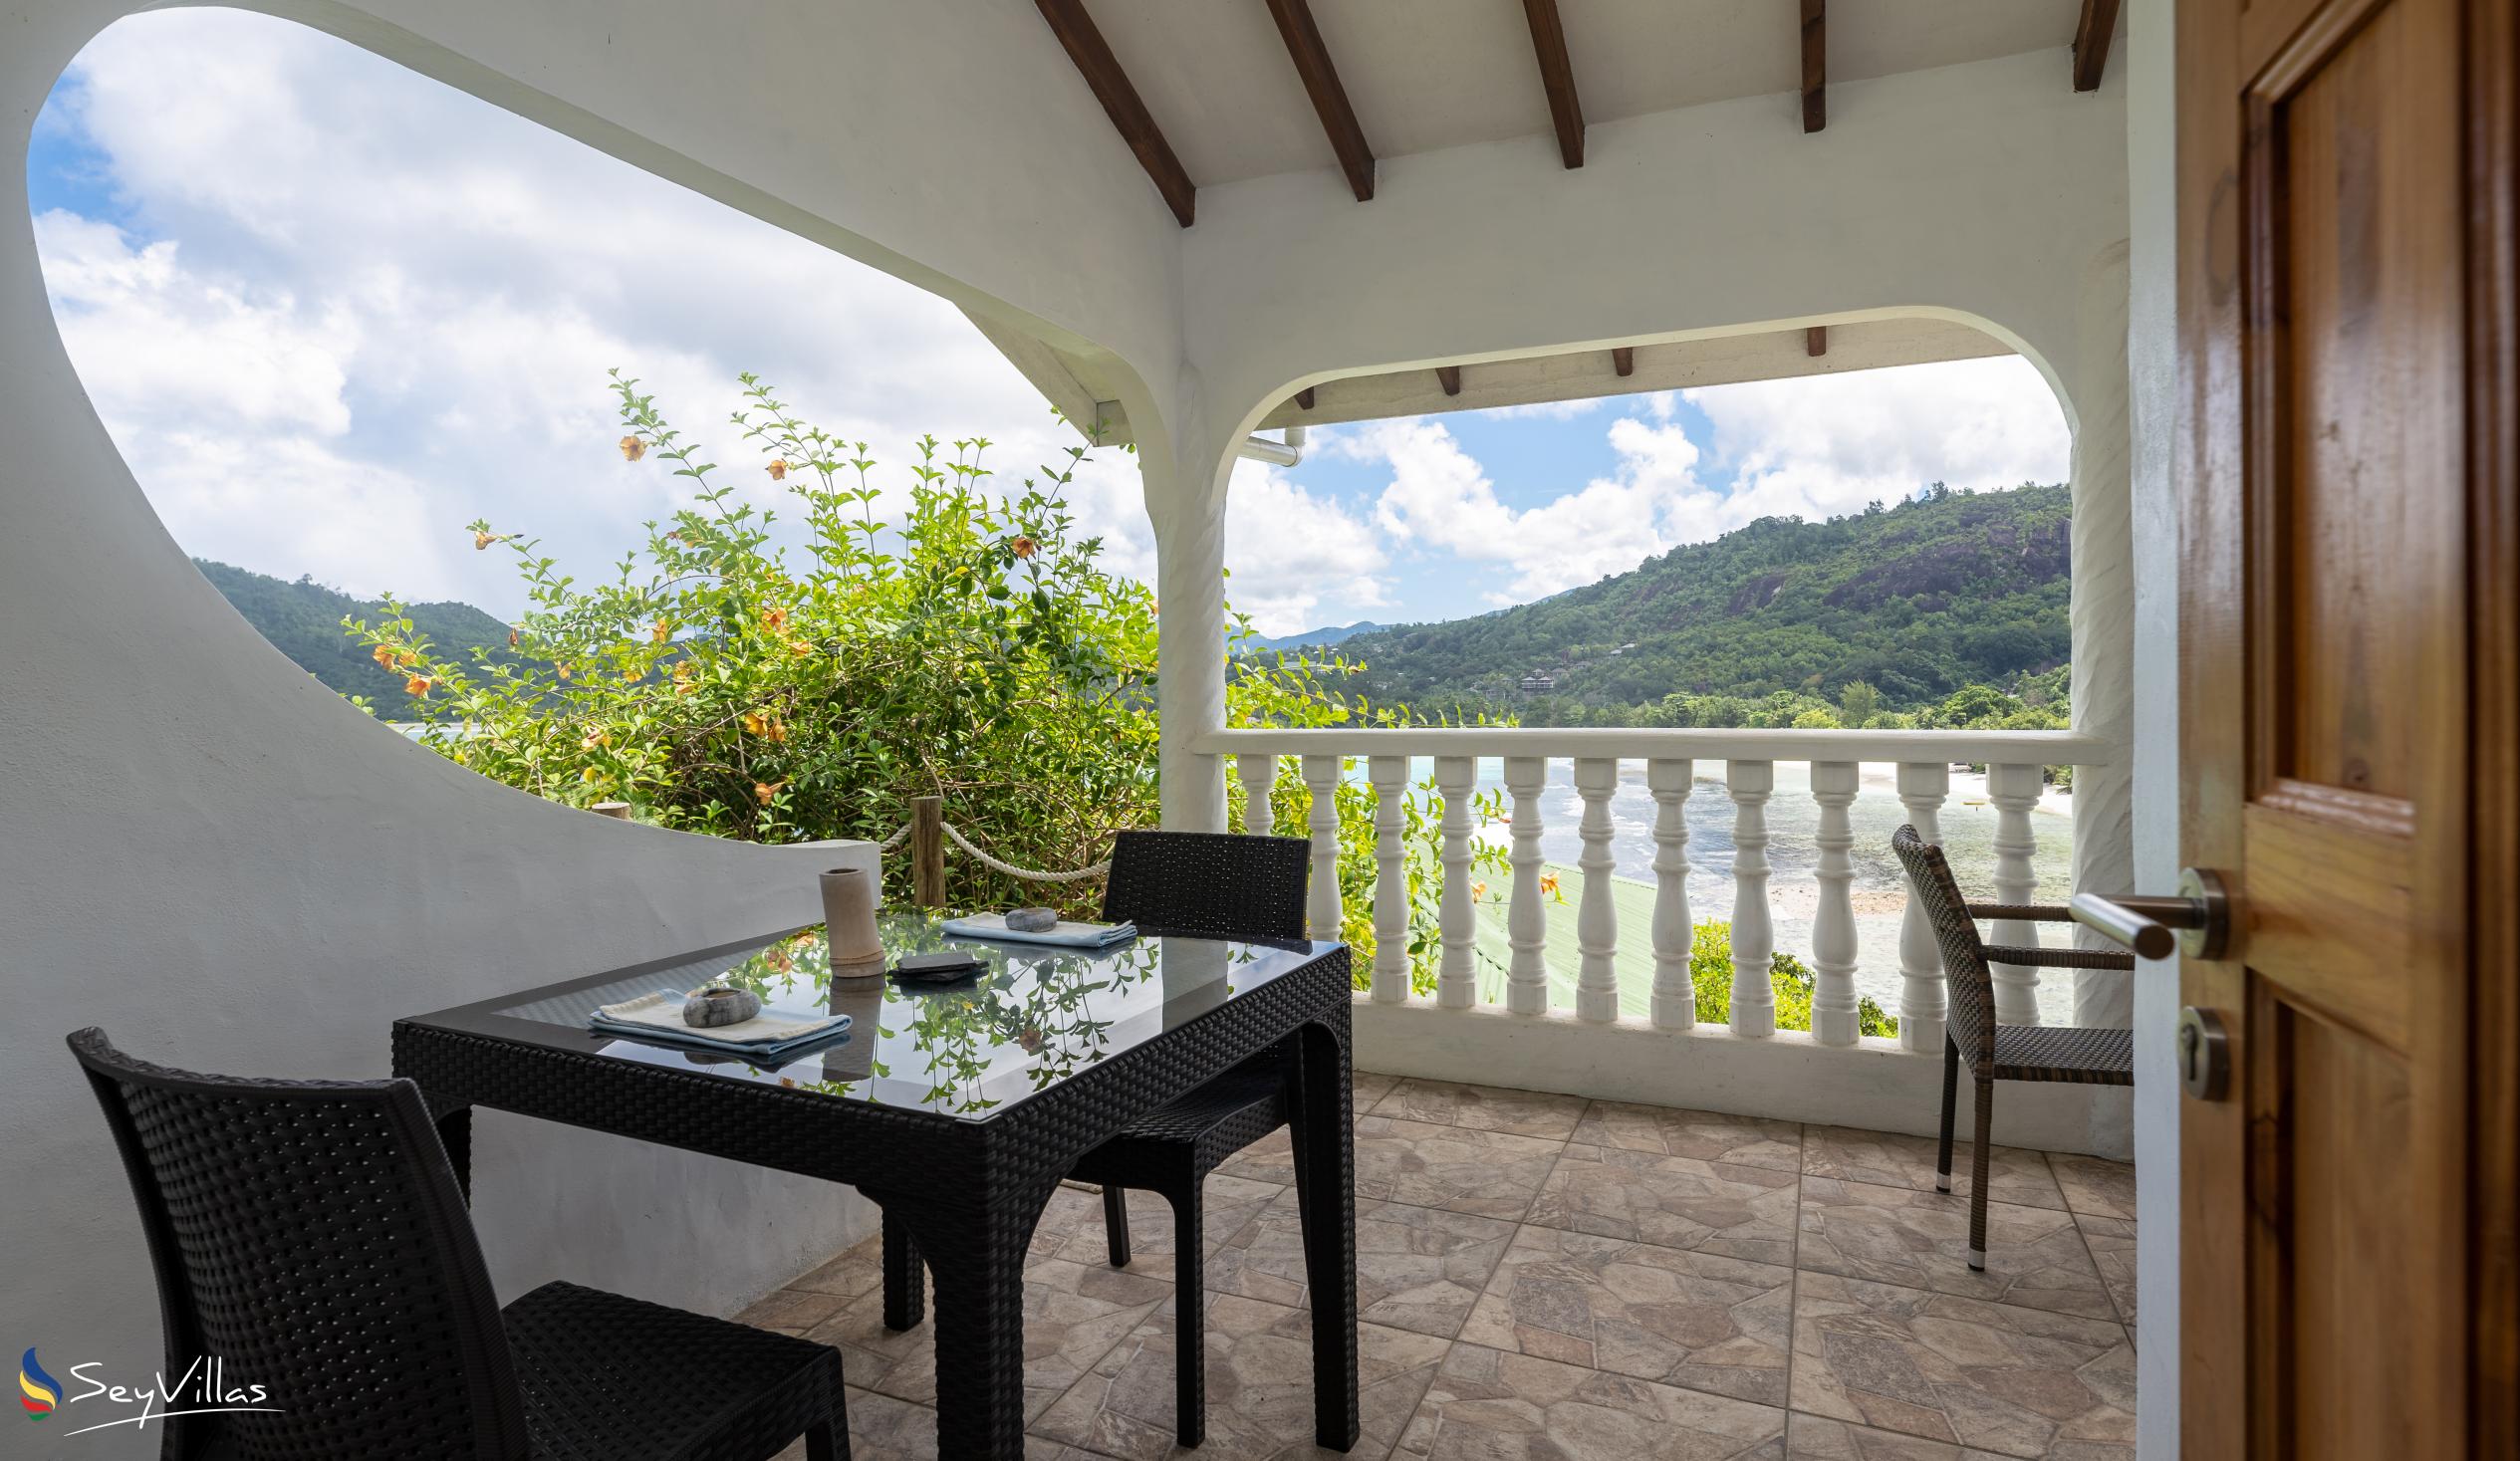 Photo 71: Lazare Picault Hotel - Honeymoon Suite - Mahé (Seychelles)